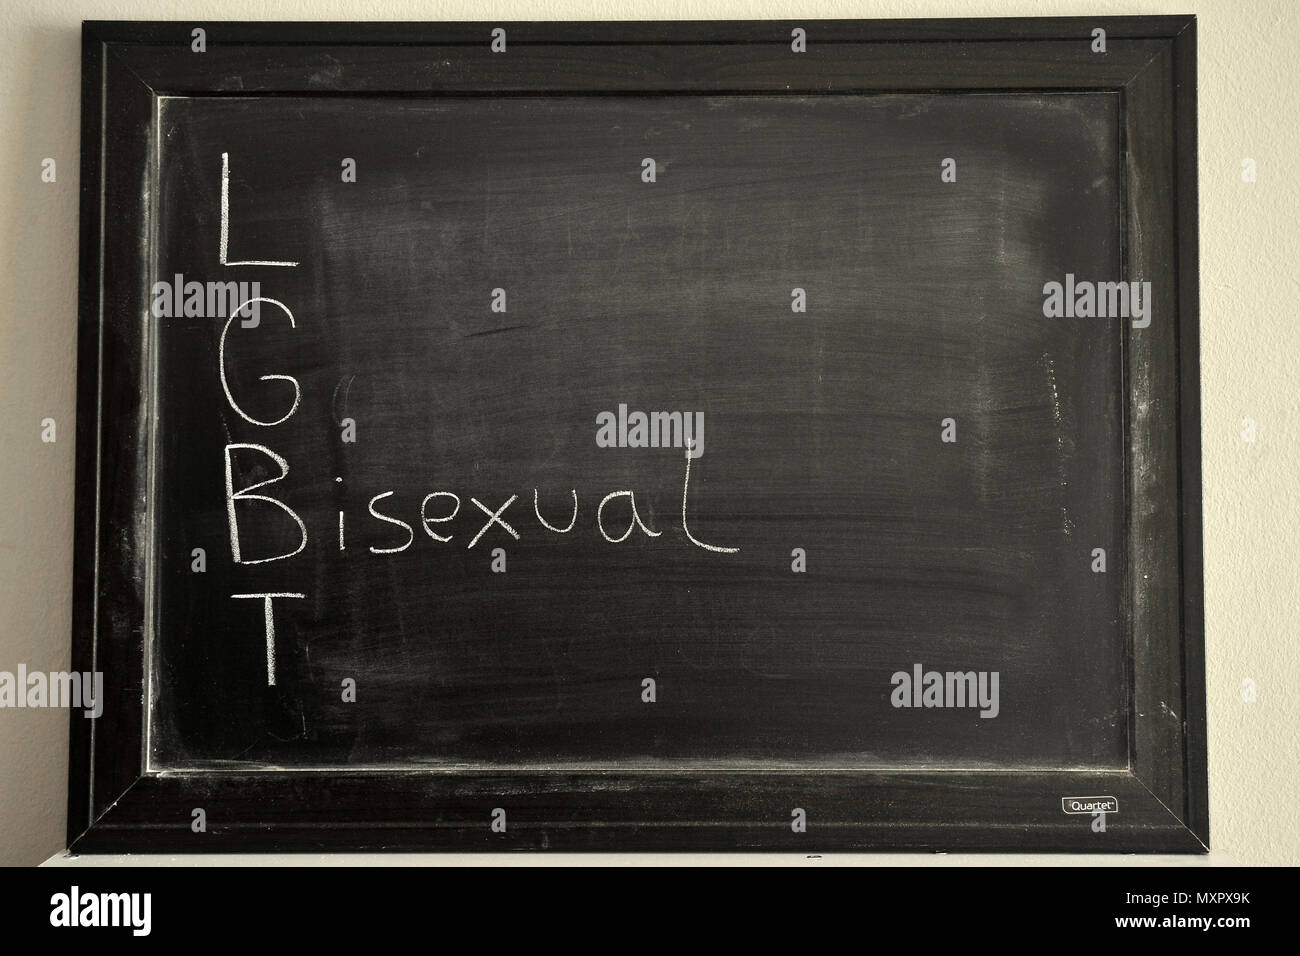 LGBT escritos en tiza sobre una pizarra blanca Foto de stock